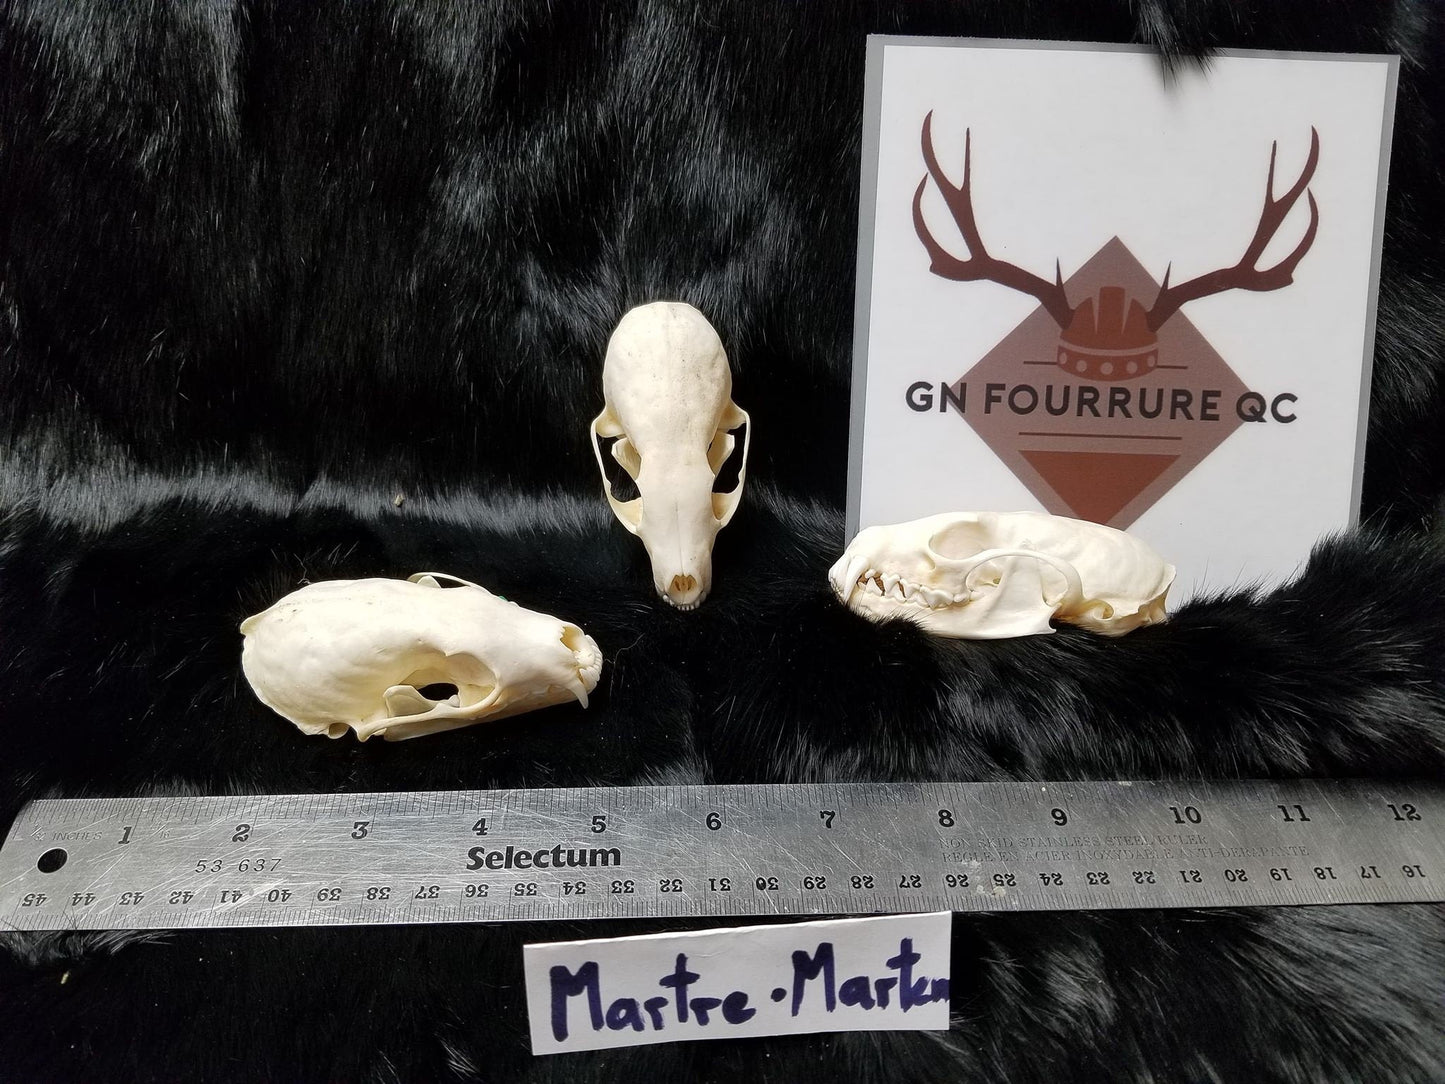 Marten Skull, Bone